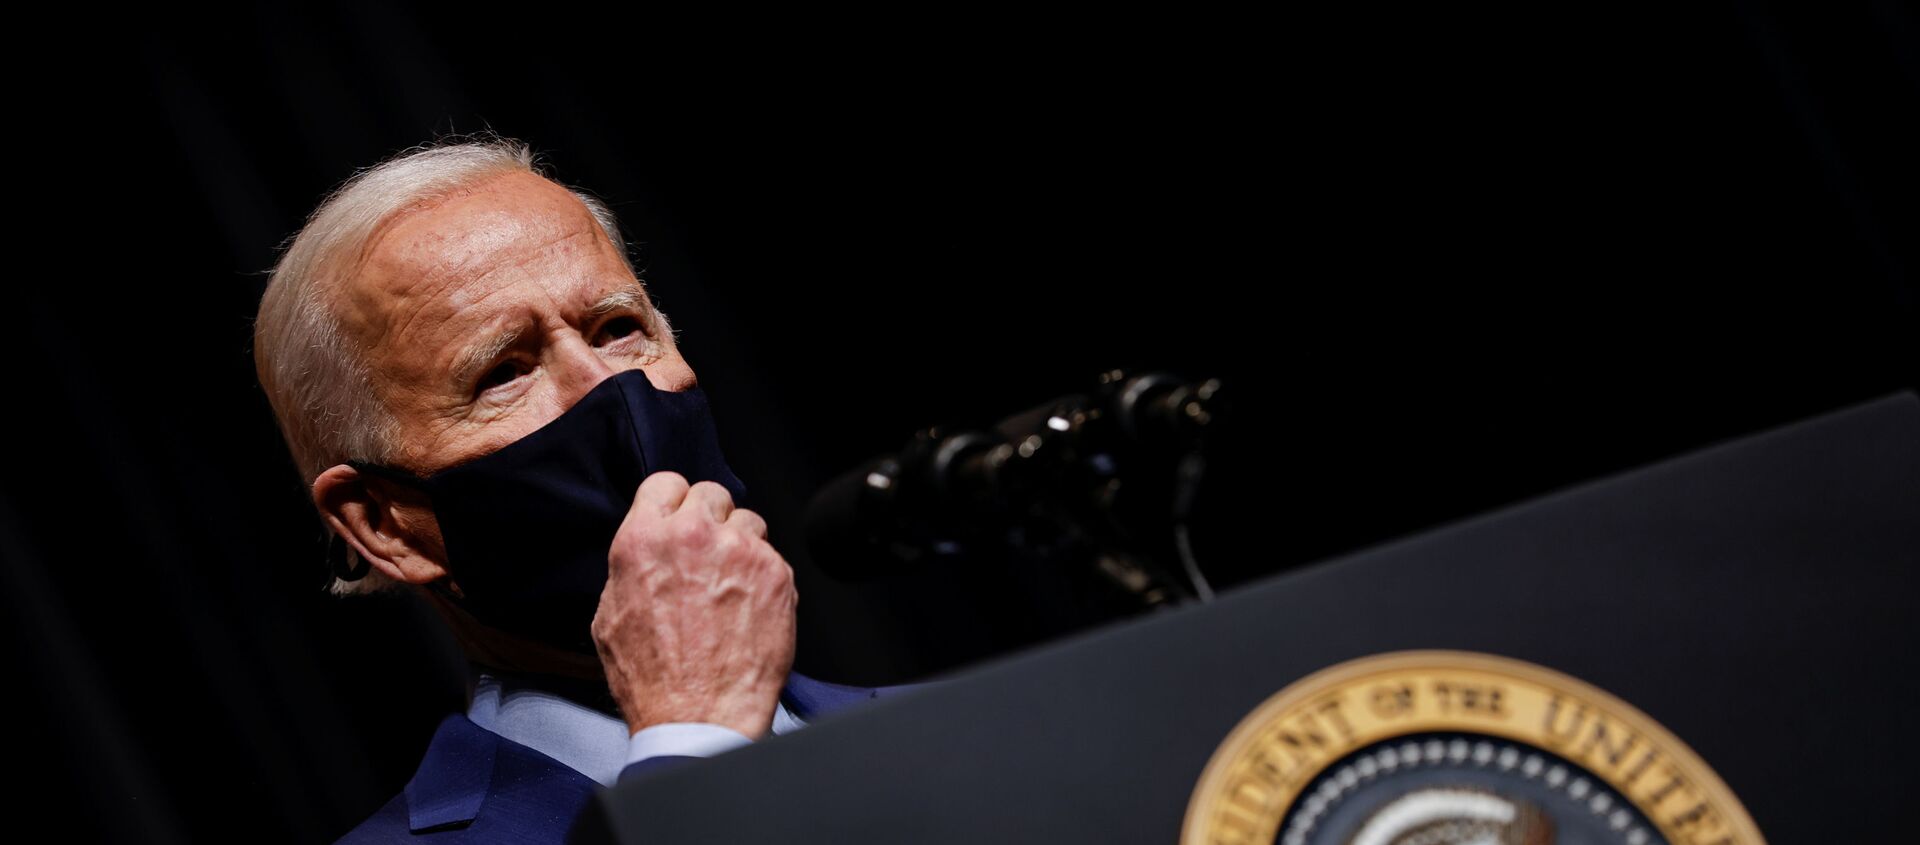 Tổng thống Hoa Kỳ Joe Biden tháo mặt nạ để nói chuyện với nhân viên NIH trong chuyến thăm NIH ở Bethesda, Maryland, Hoa Kỳ, ngày 11 tháng 2 năm 2021. - Sputnik Việt Nam, 1920, 14.02.2021